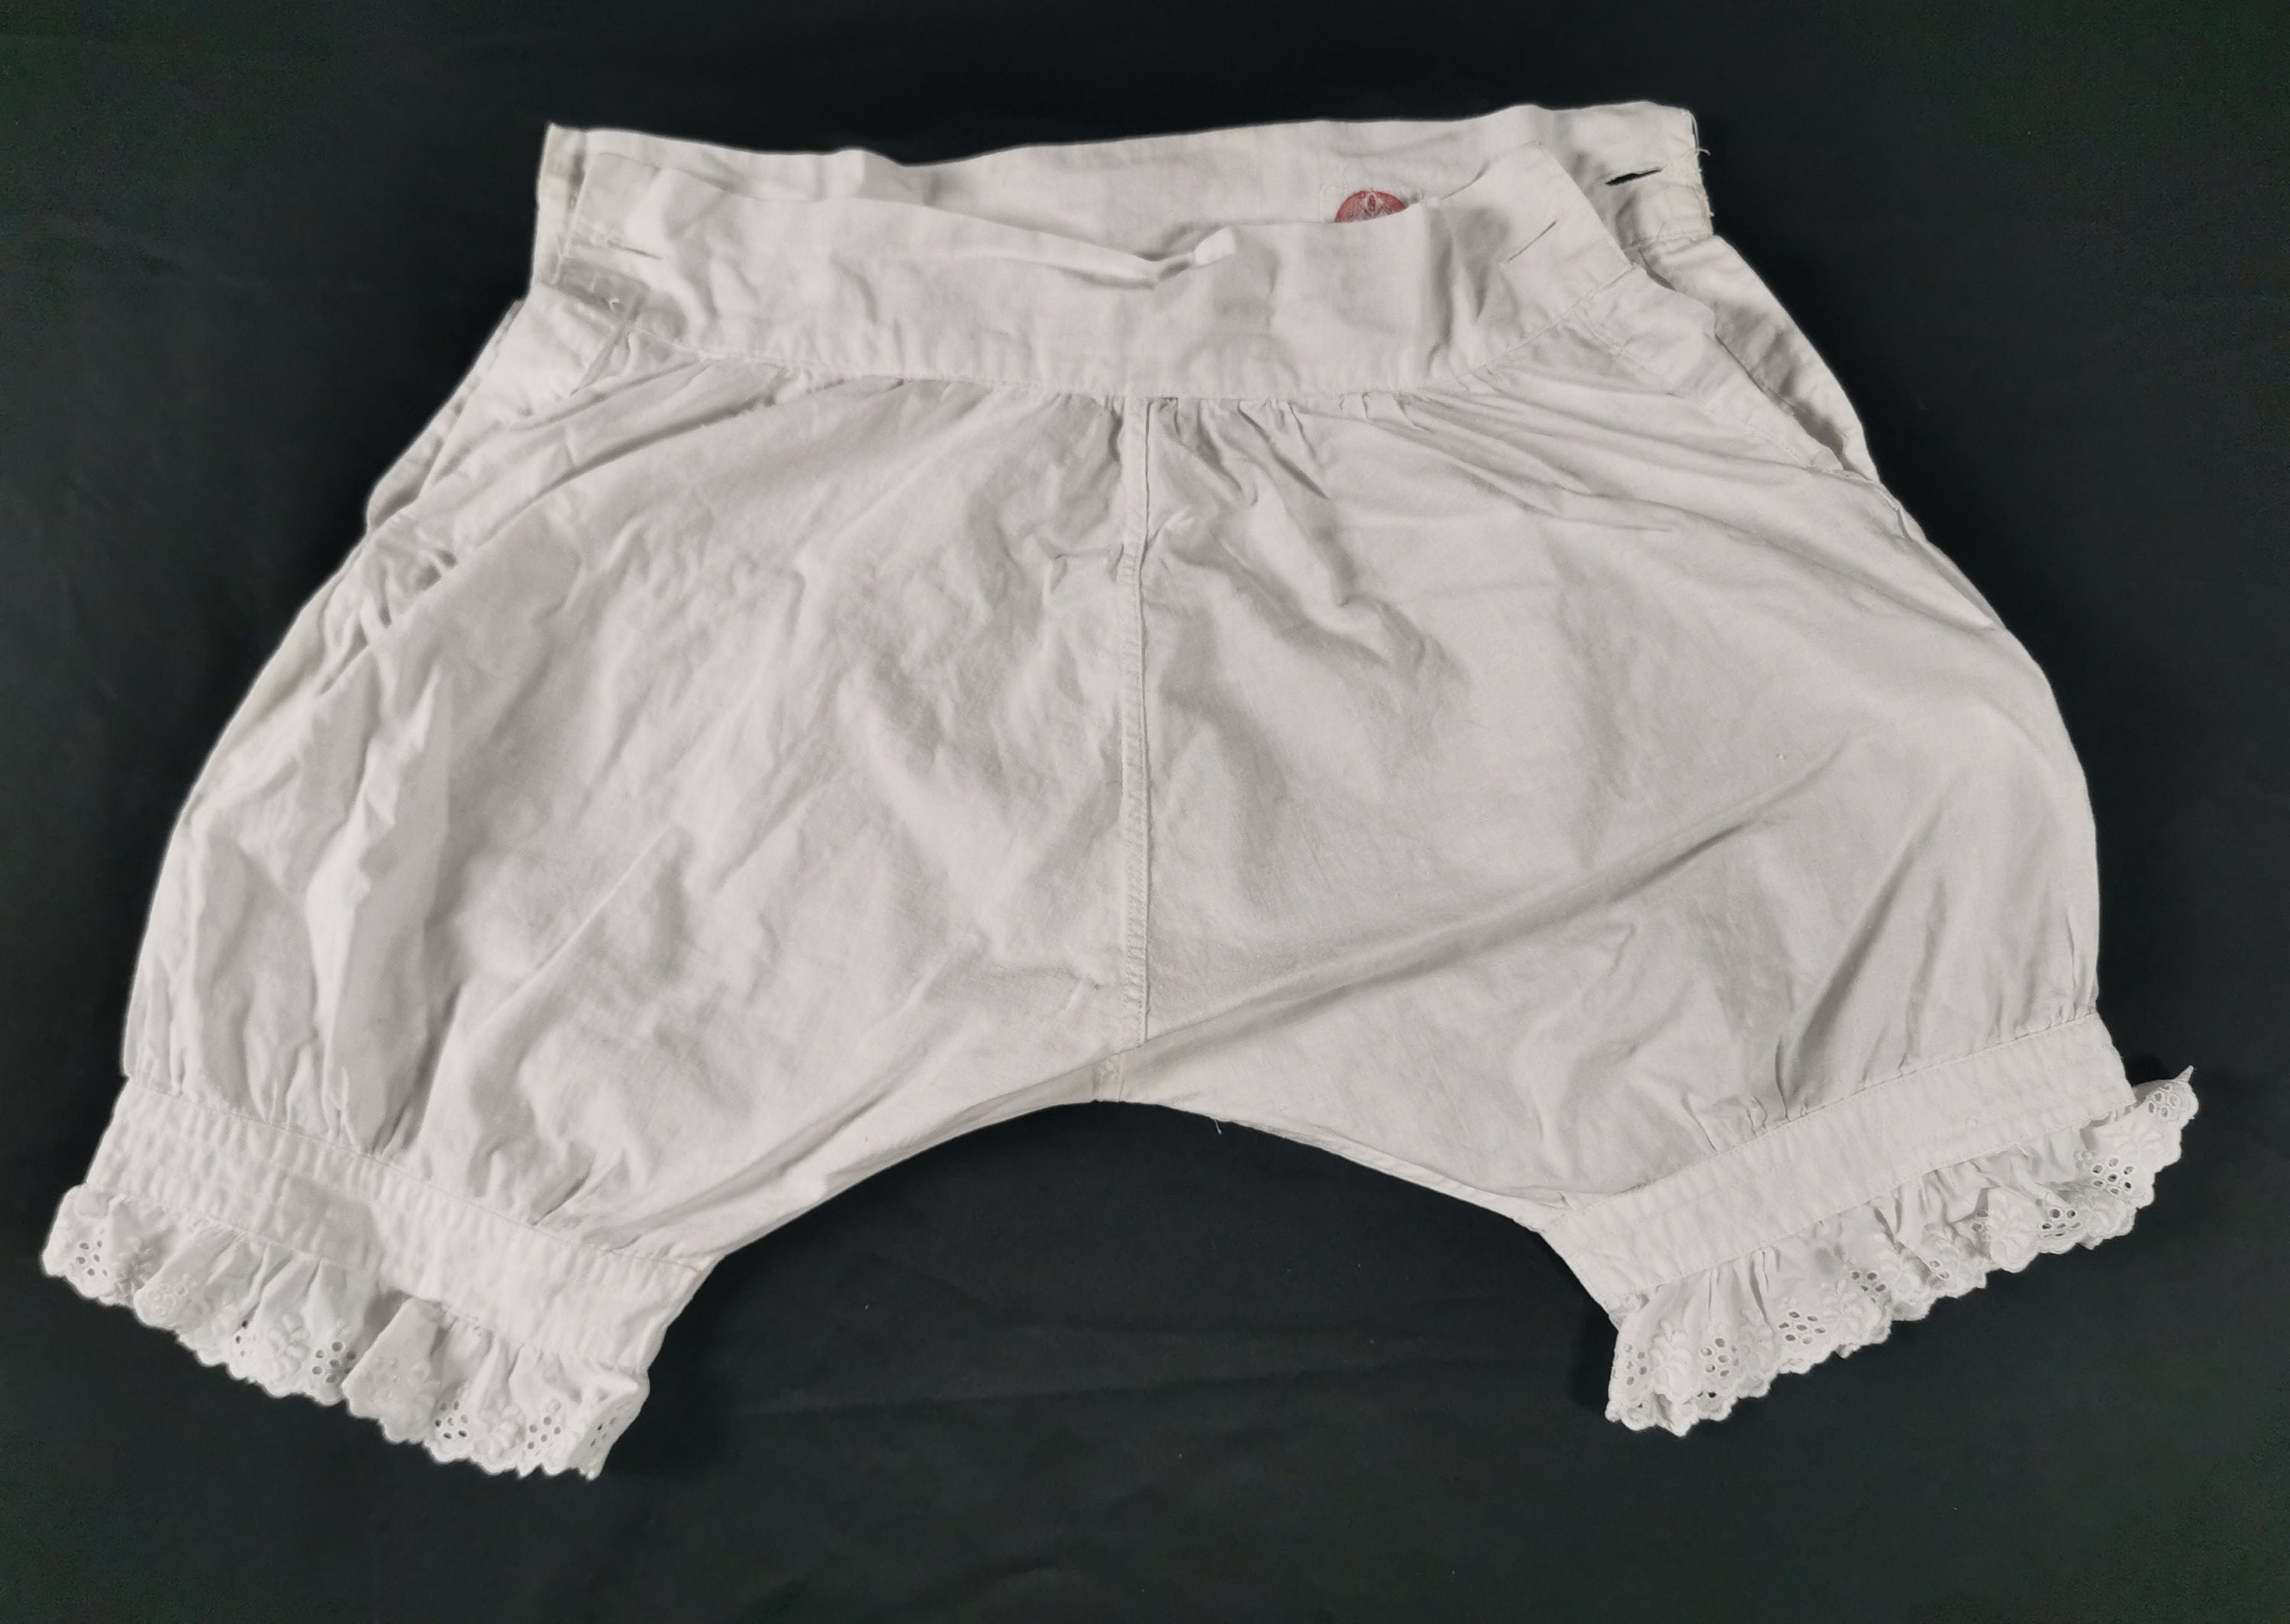 Underpants Kids Vintage Teens High Waist Underpants, 10 12 Year